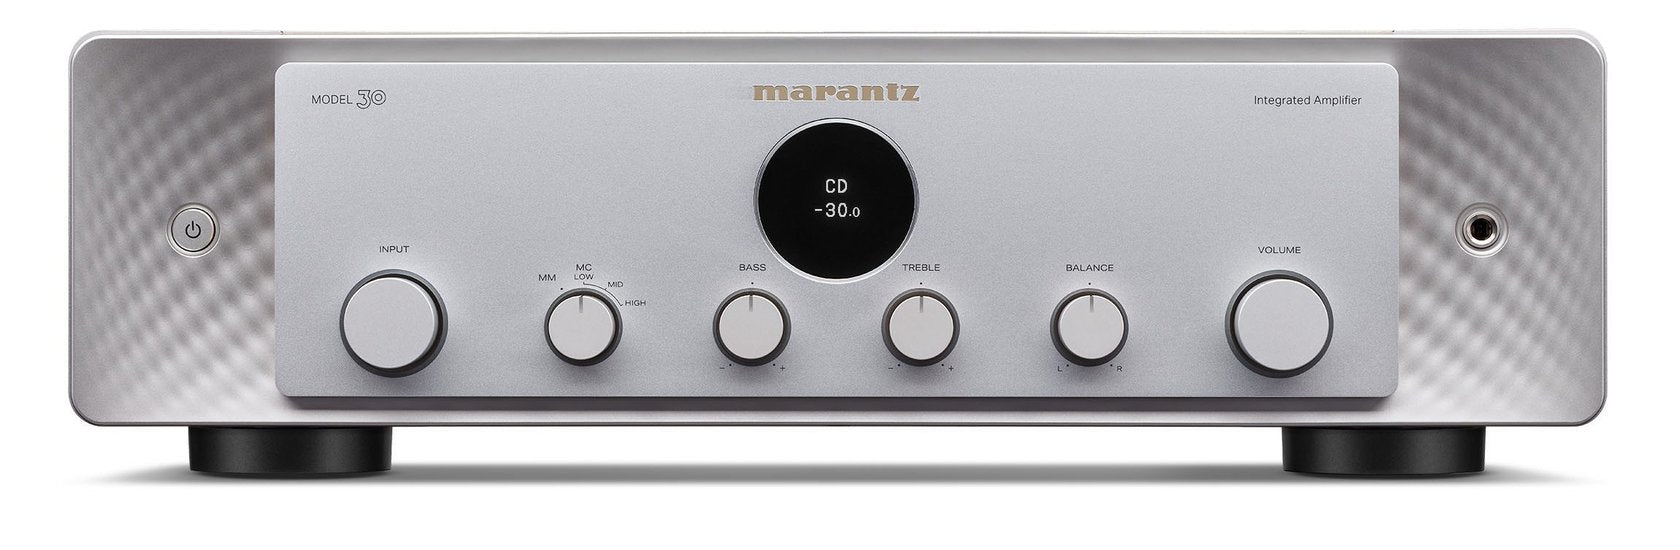 Marantz MODEL 30 stereo amplifier